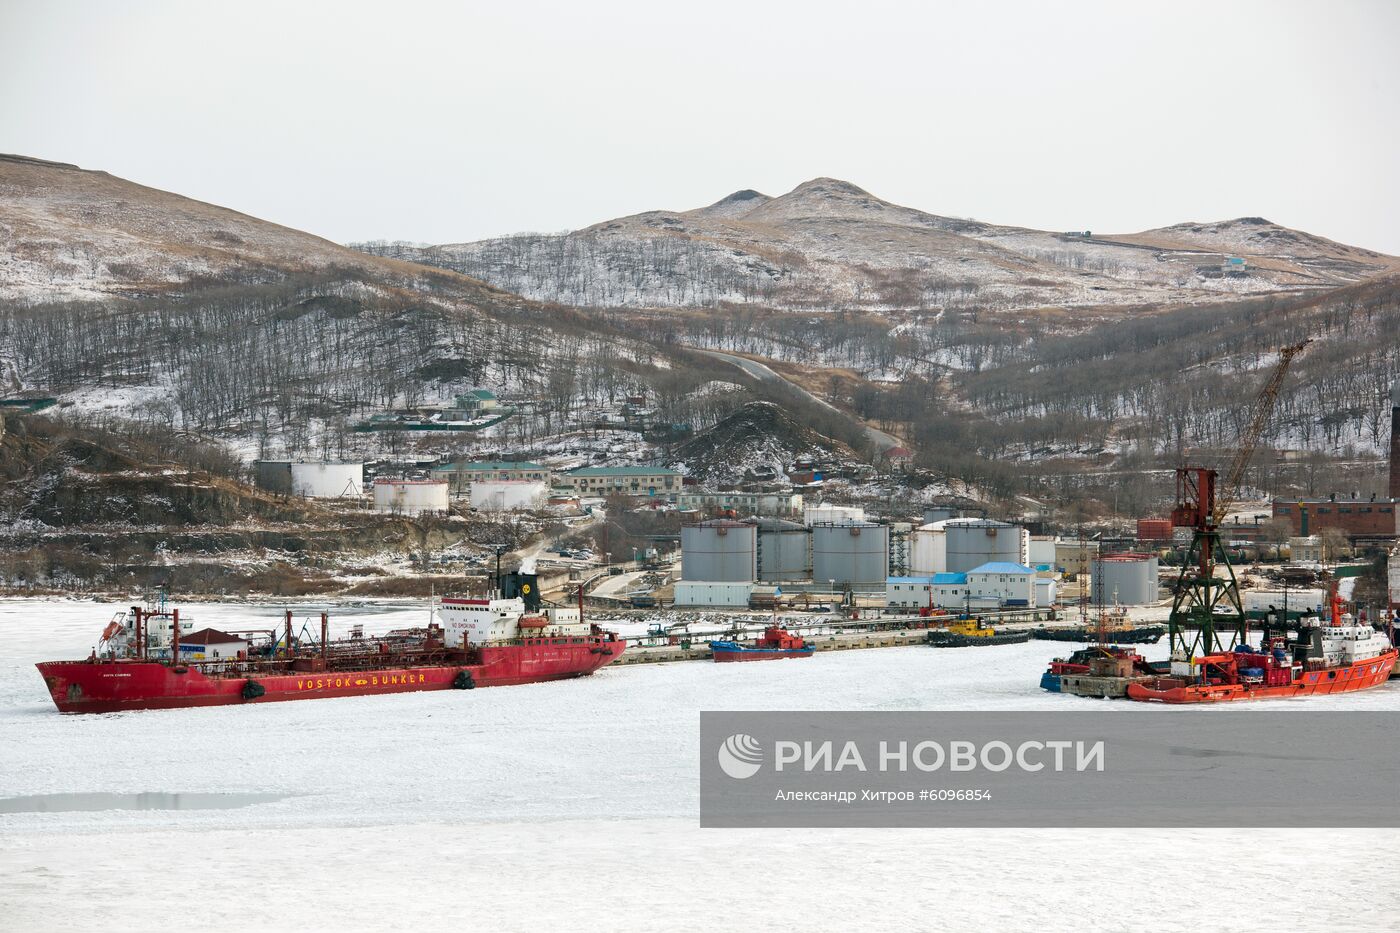 Новым портом для "Морского старта" станет поселок Славянка